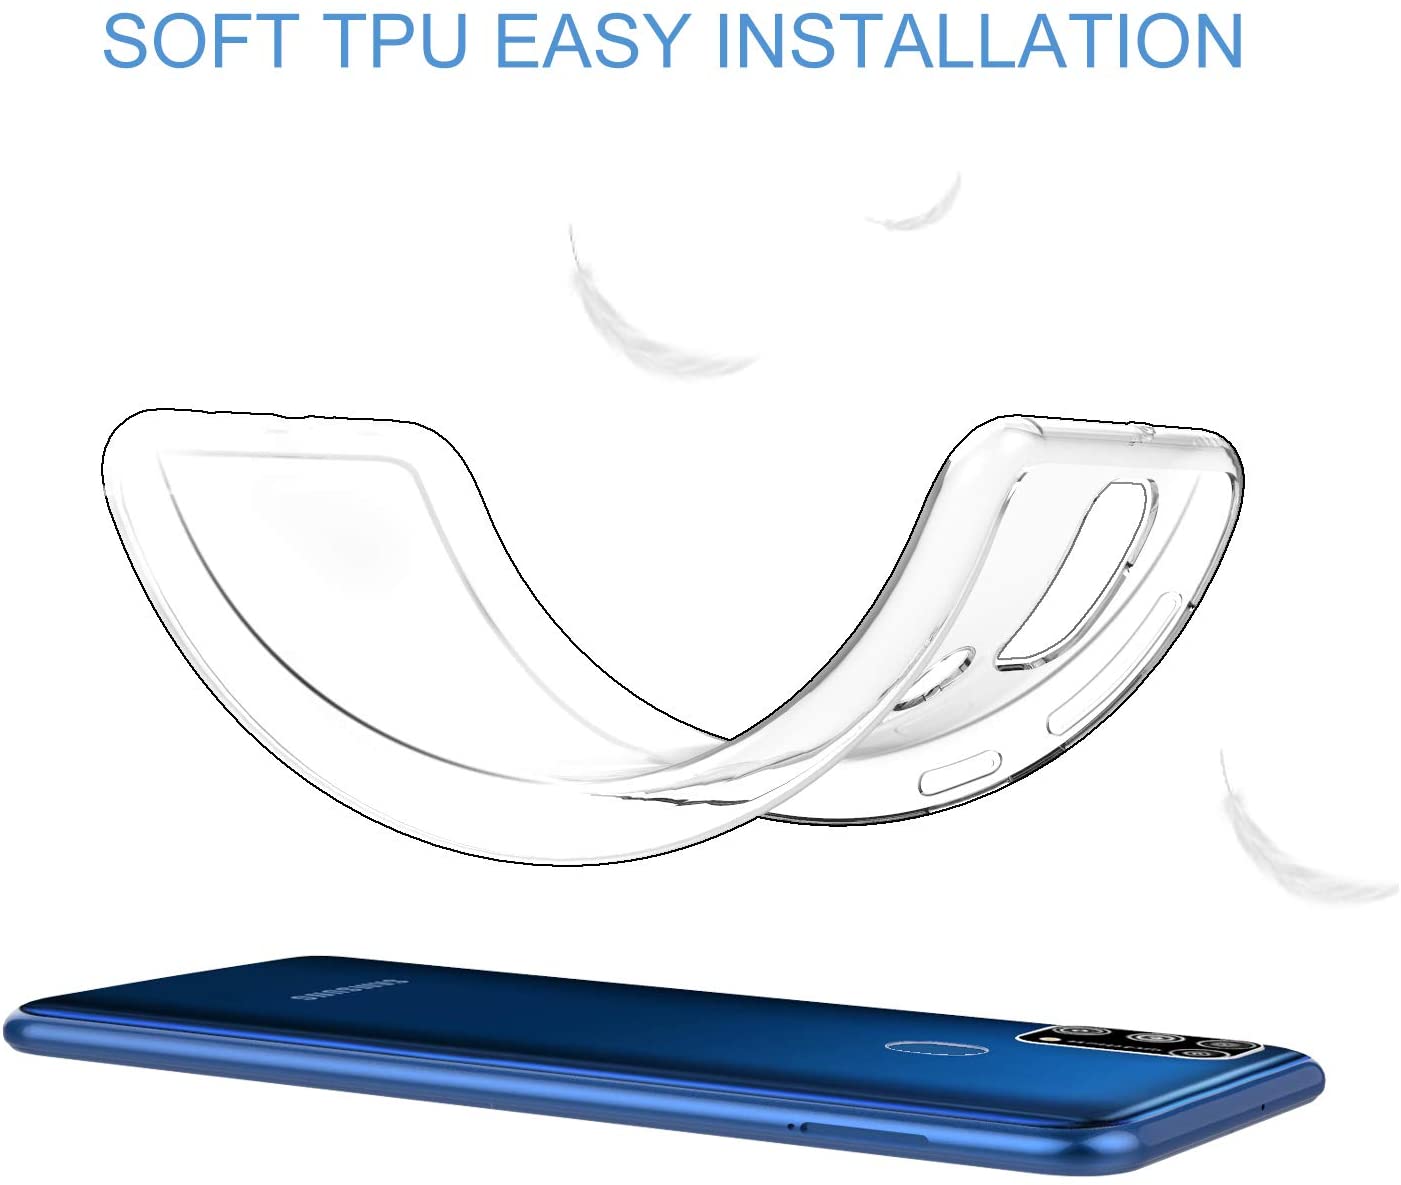 Ốp lưng dẻo silicon cho Samsung Galaxy M31 hiệu HOTCASE Ultra Thin siêu mỏng 0.6mm, chống trầy, chống bụi - Hàng nhập khẩu